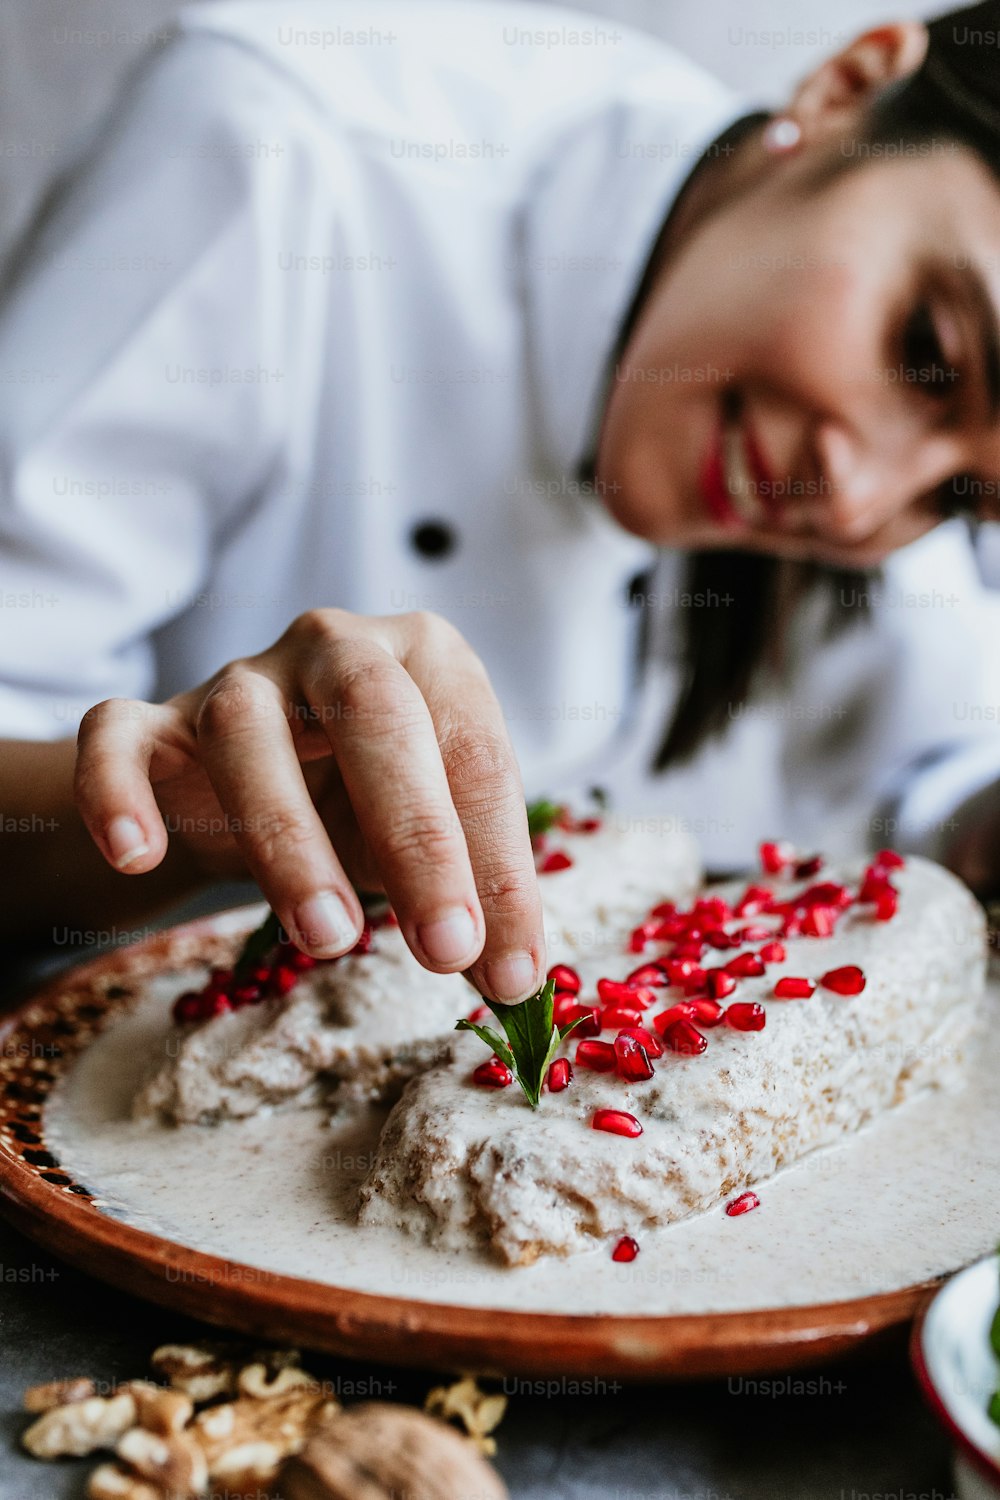 メキシコの女性シェフがポブラノ唐辛子と食材を使ったノガダのレシピを調理するメキシコの女性シェフ、プエブラメキシコの伝統的な料理